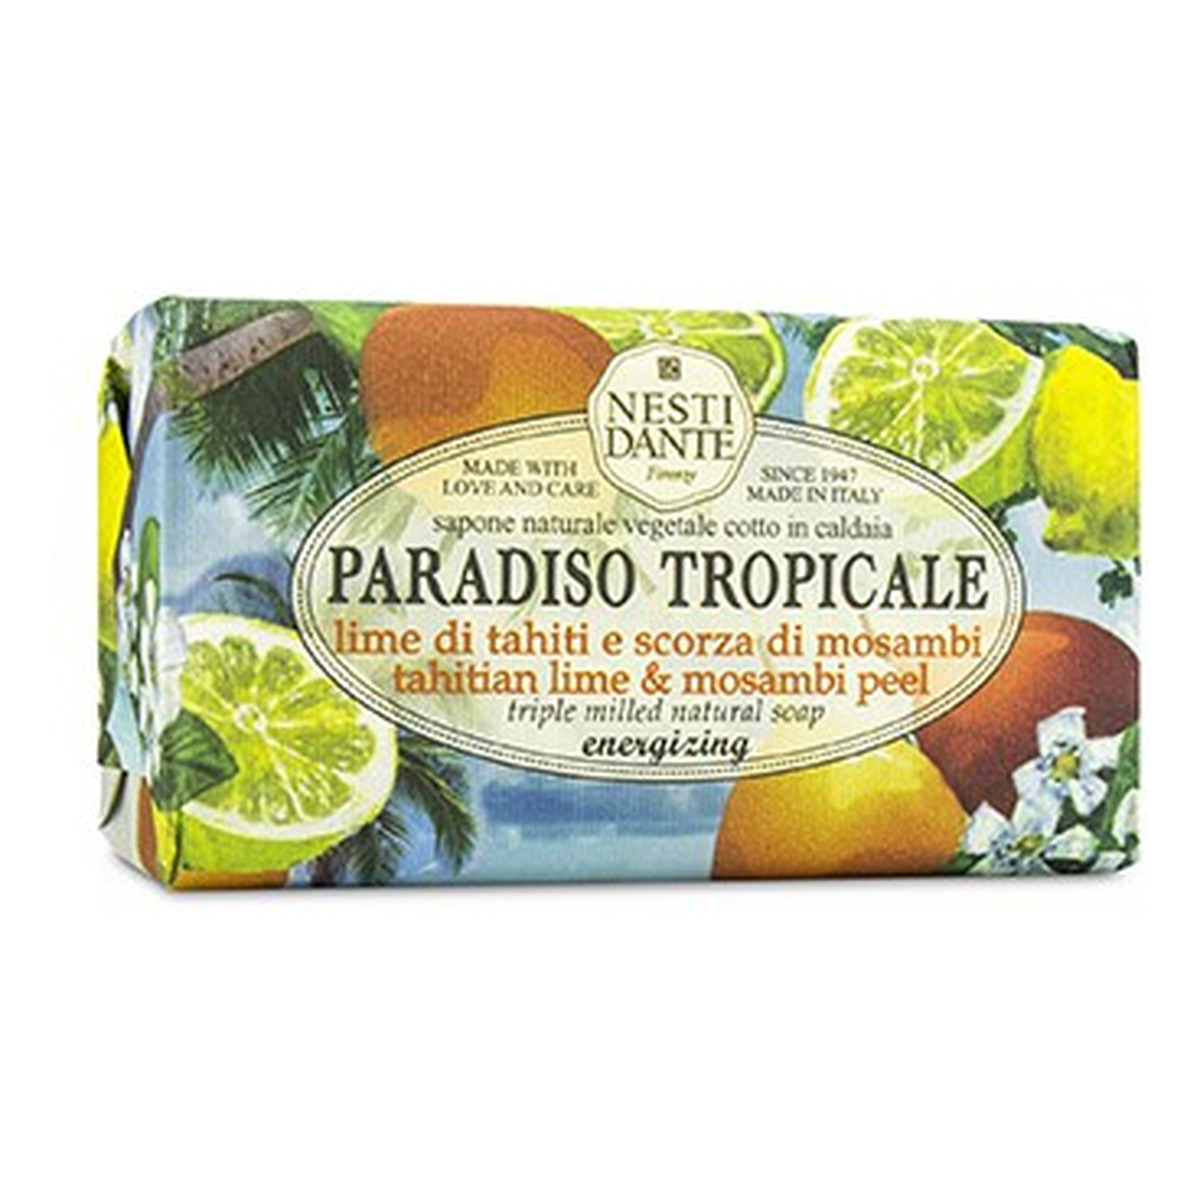 Nesti Dante Paradiso Tropicale Mydło toaletowe limonka 250g